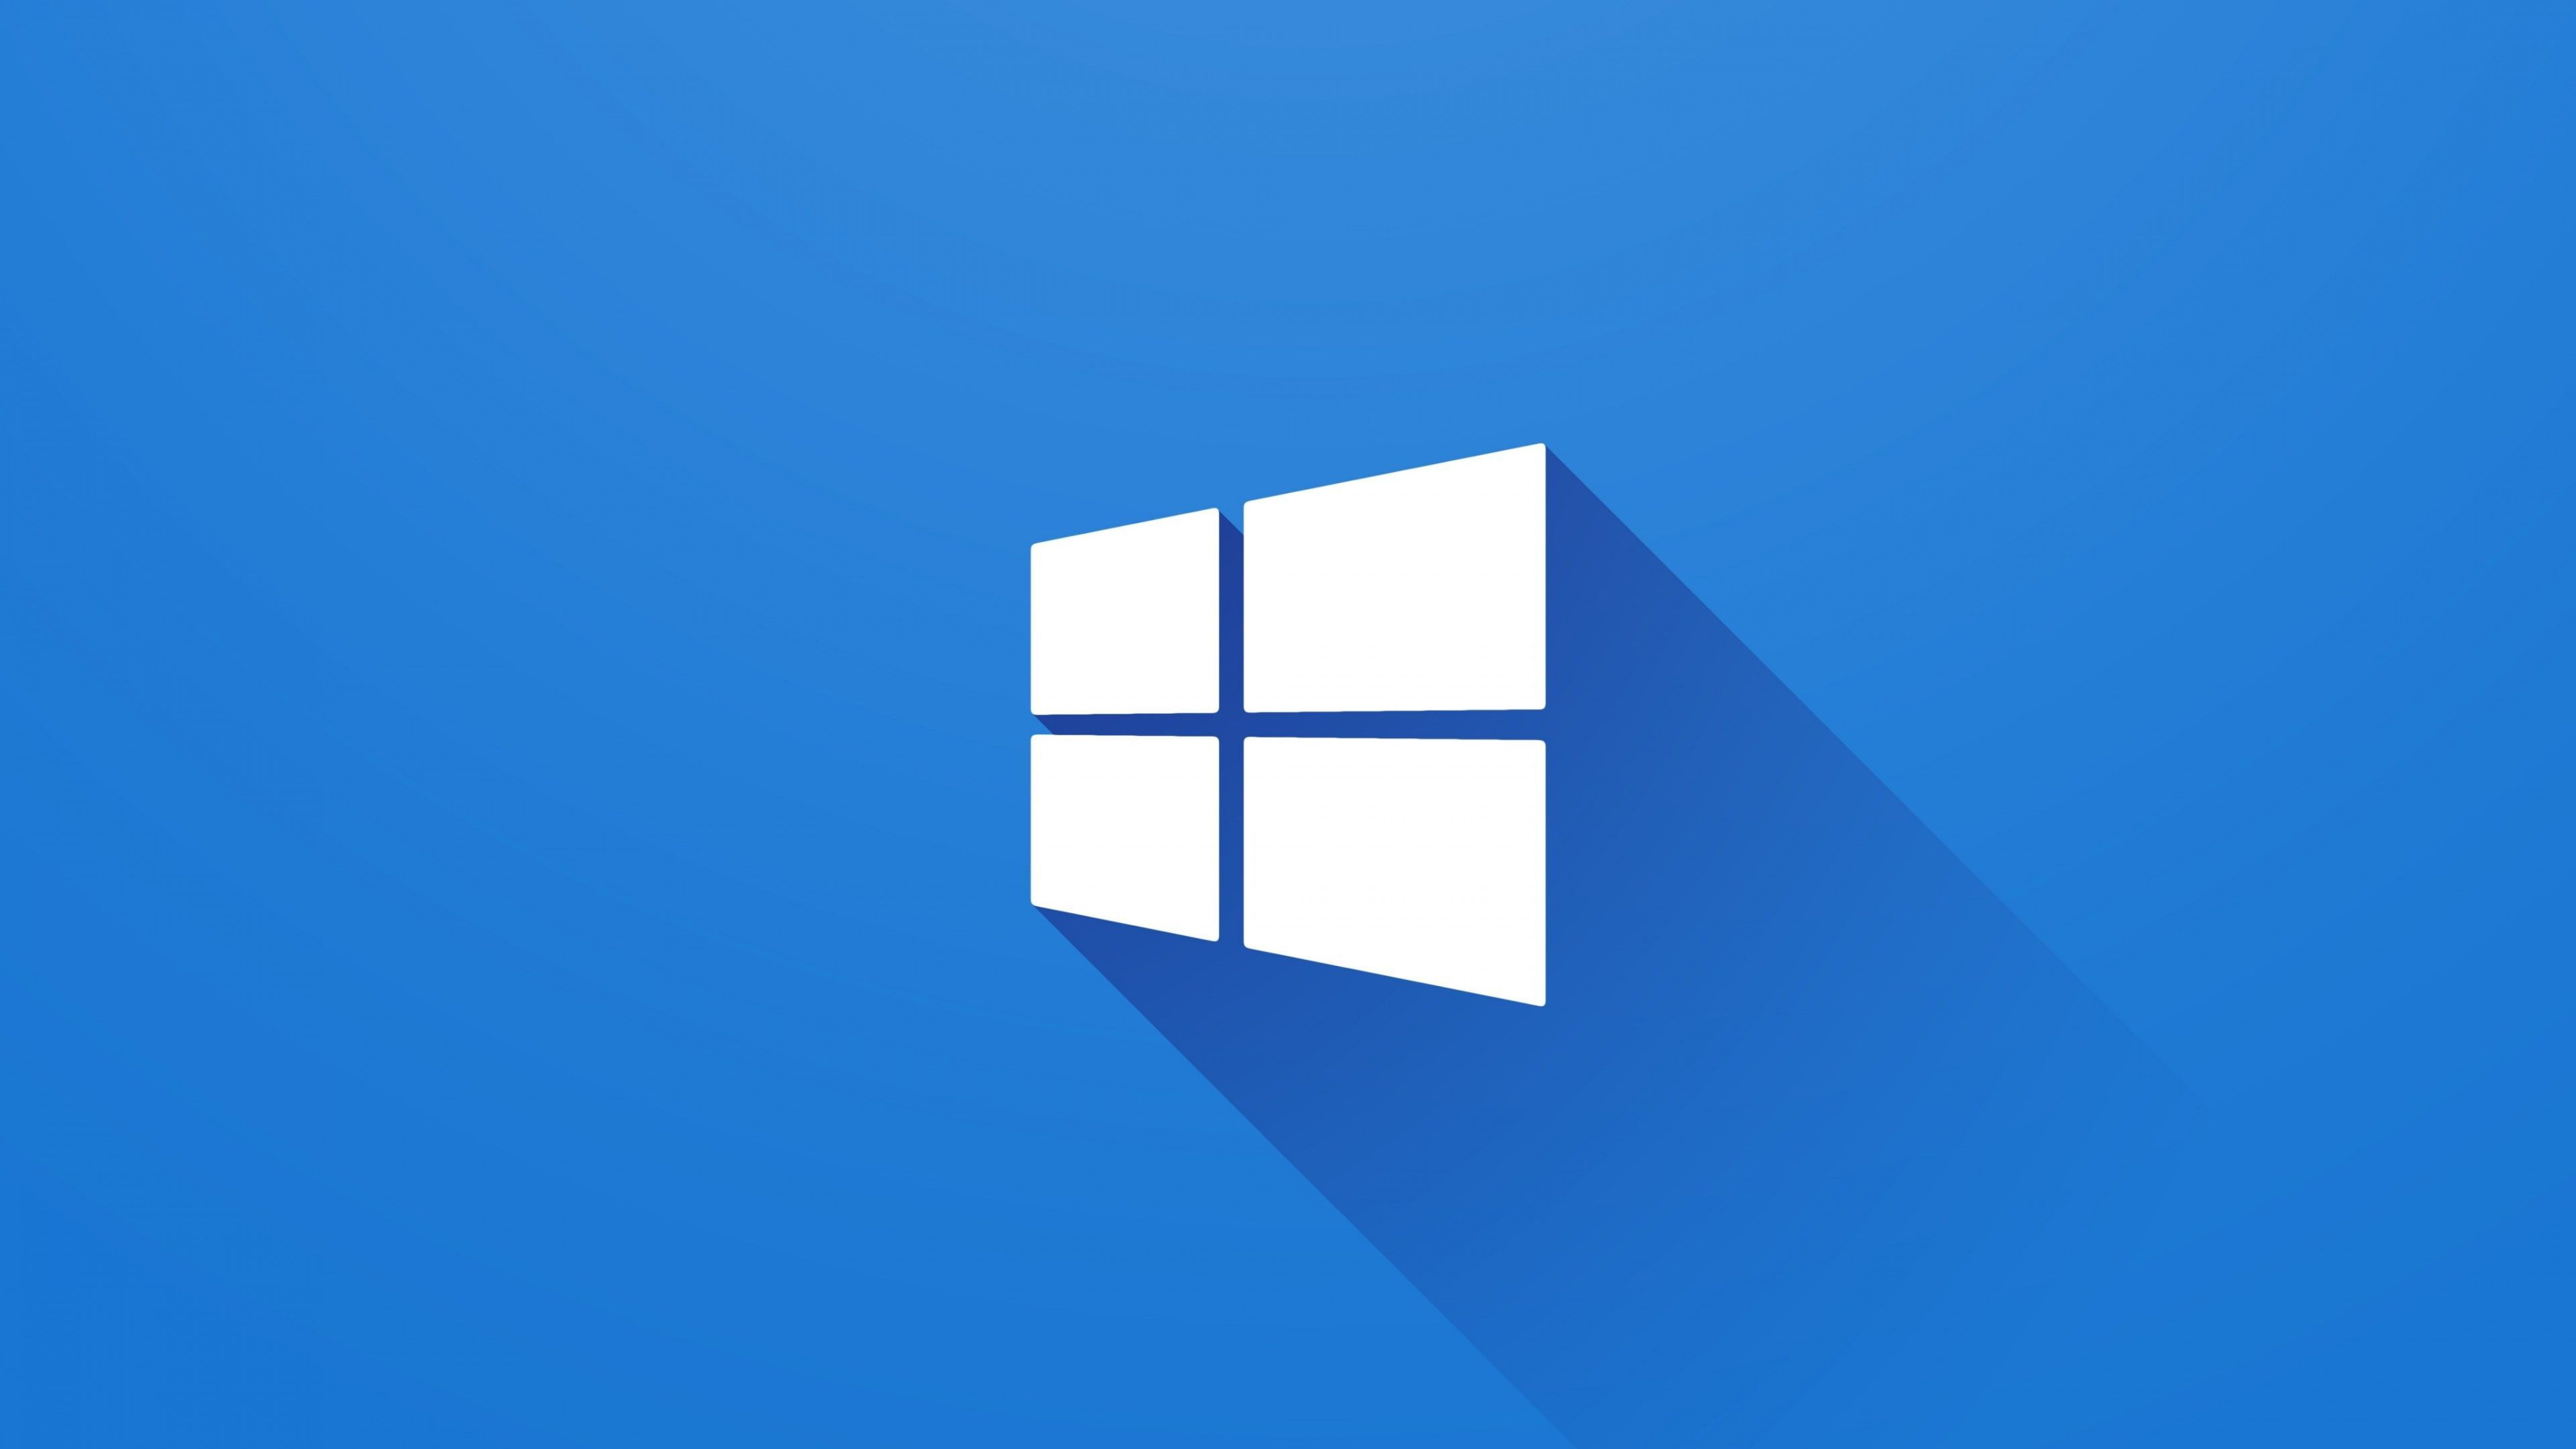 Logo Windows đã trở thành biểu tượng quen thuộc của máy tính và hệ điều hành Windows. Hãy xem hình ảnh để hiểu thêm về lịch sử và ý nghĩa của logo Windows. Bạn sẽ cảm thấy thú vị với những thông tin thú vị và đáng nhớ liên quan đến logo này.